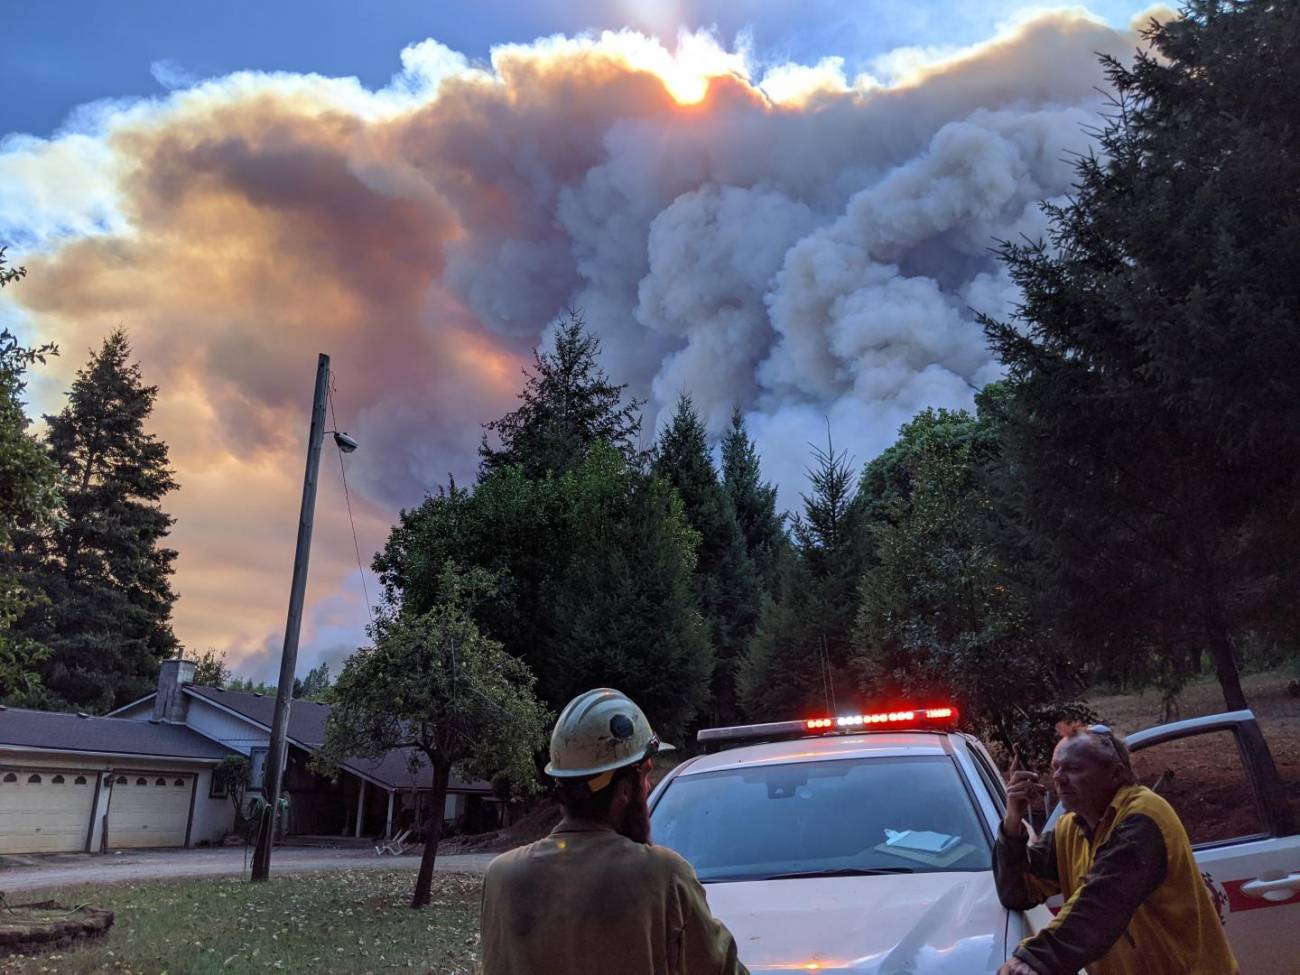 El crecimiento explosivo del fuego quemó más de 90.000 hectáreas y se perdieron más de 200 casas en California. La salud del planeta empeora / Foto: SINC